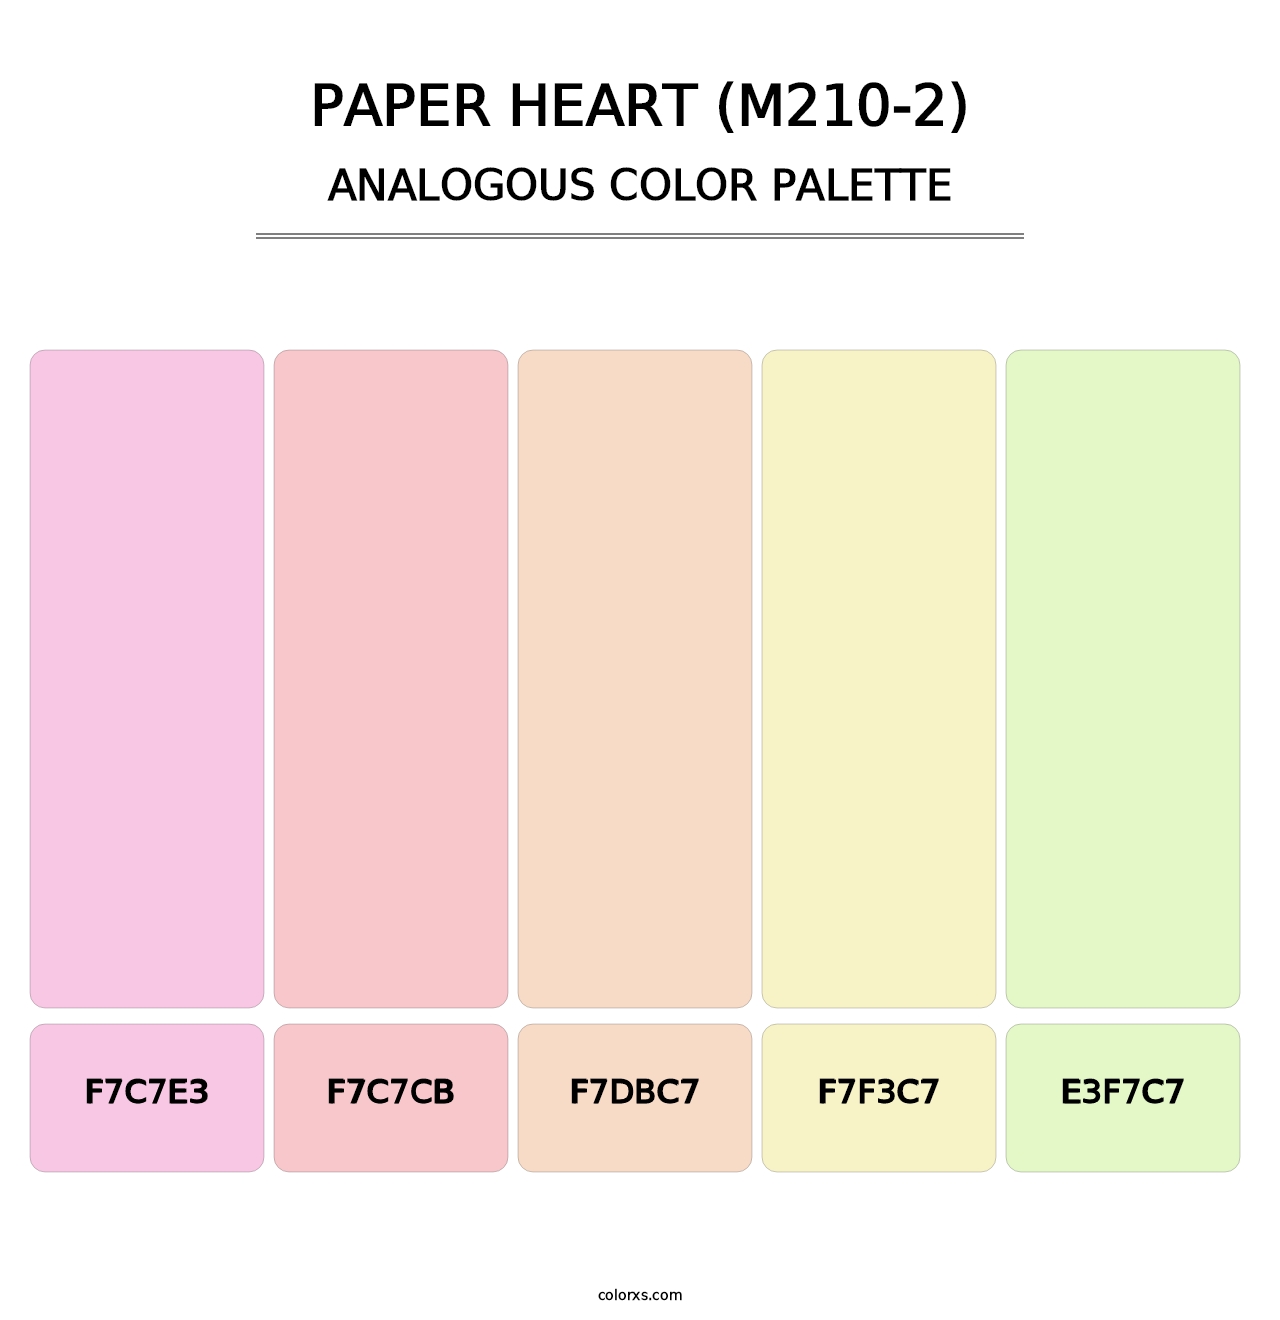 Paper Heart (M210-2) - Analogous Color Palette